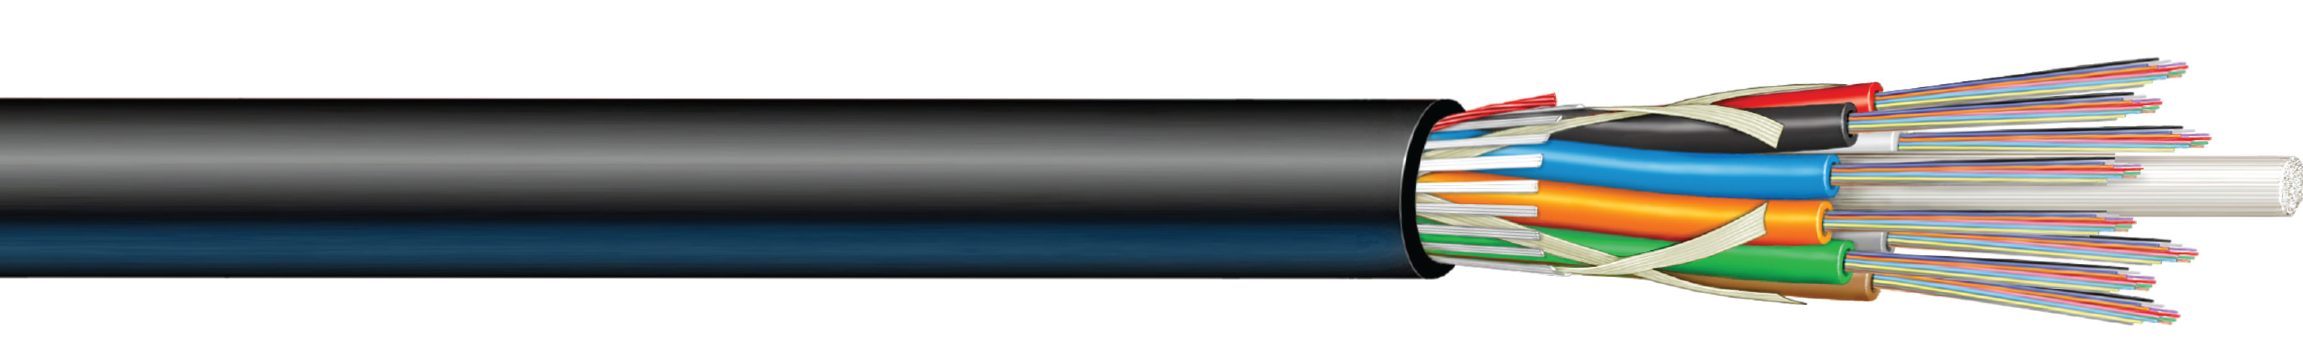 CampusLink LT™ Loose Tube Riser (Gel) Cable